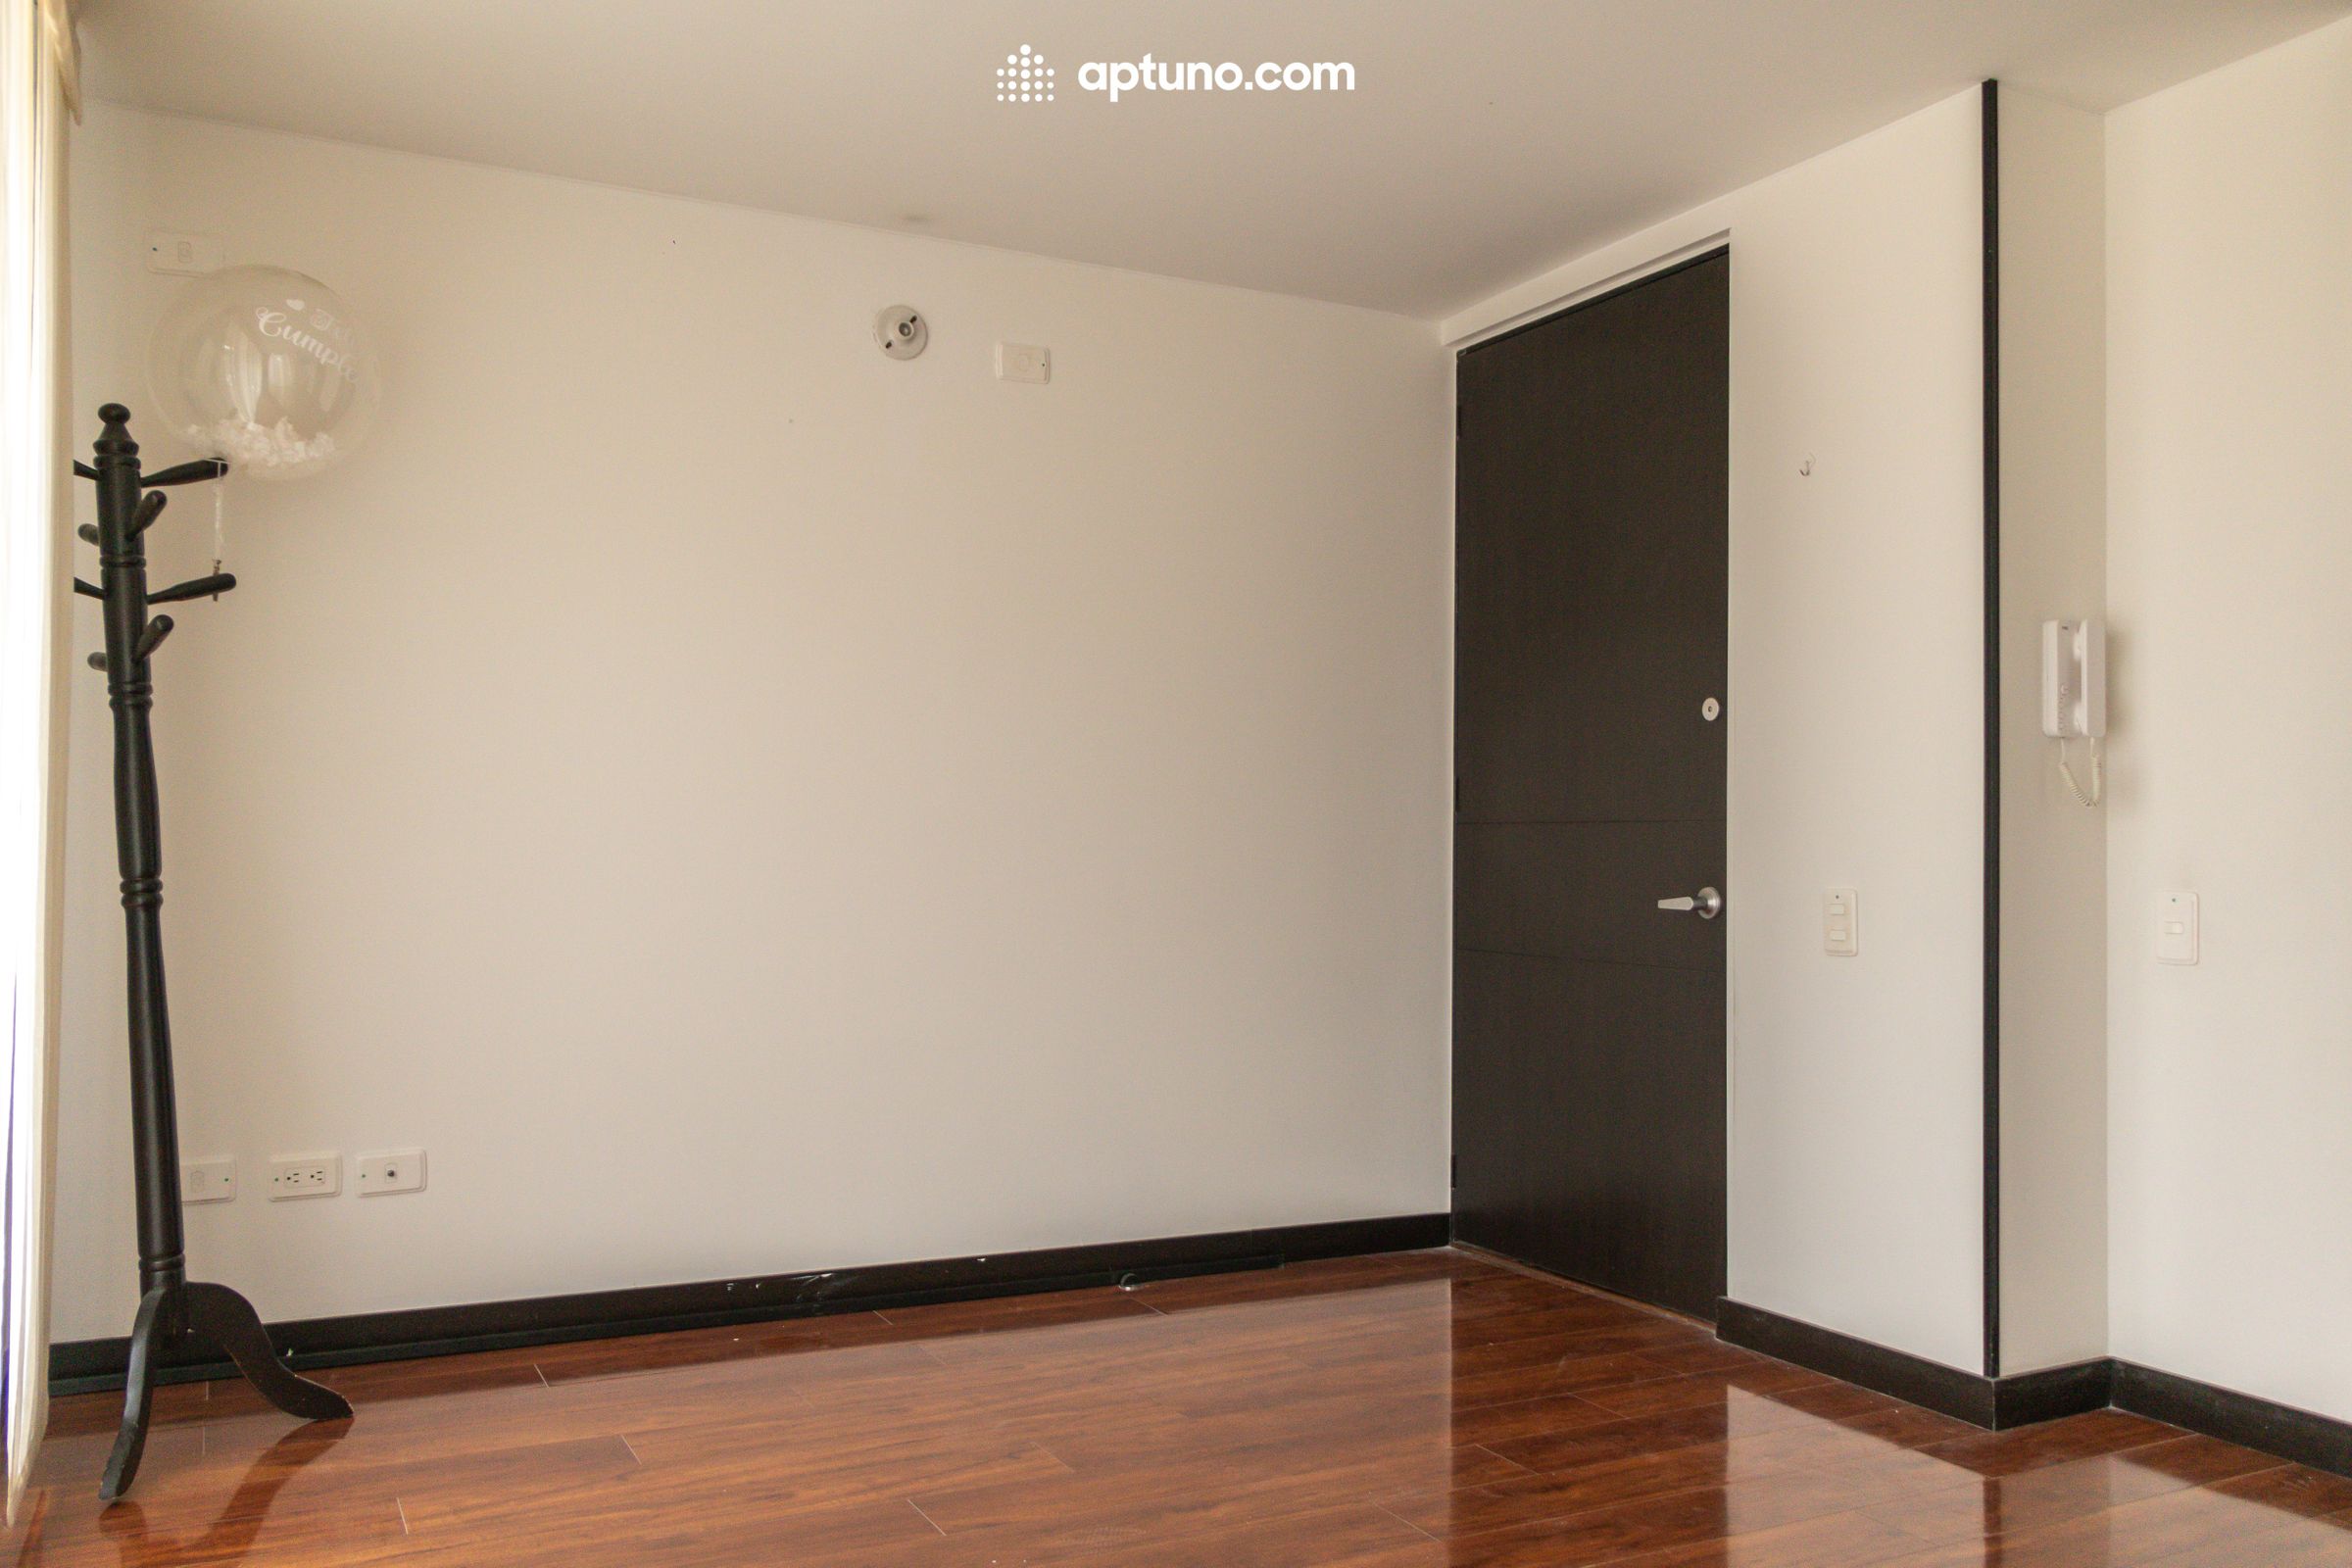 Apartamento en arriendo Madrid 62 m² - $ 940.000,00